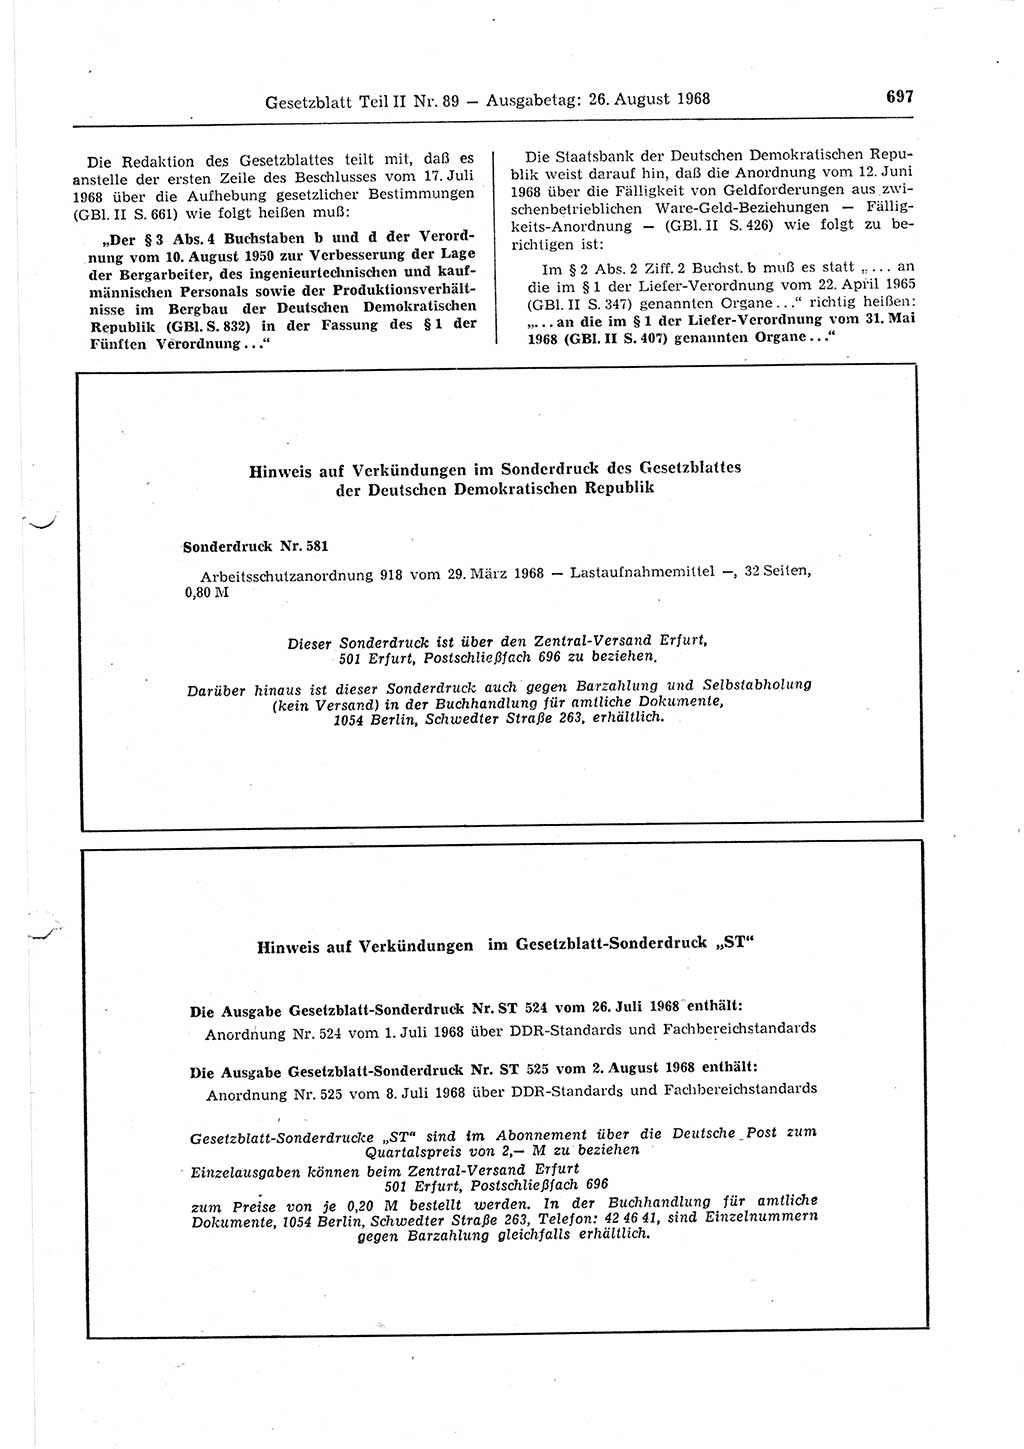 Gesetzblatt (GBl.) der Deutschen Demokratischen Republik (DDR) Teil ⅠⅠ 1968, Seite 697 (GBl. DDR ⅠⅠ 1968, S. 697)